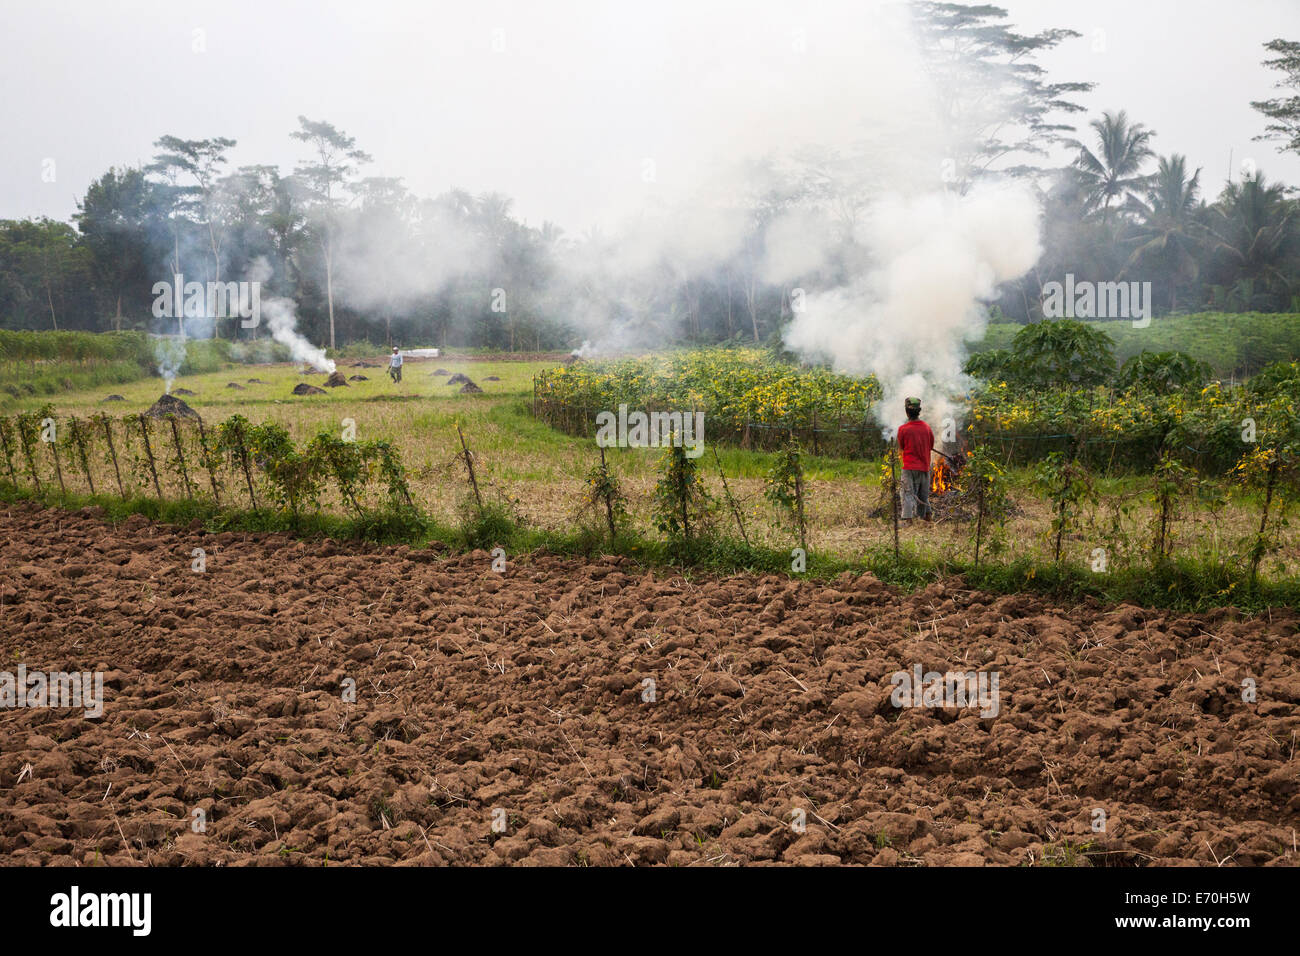 Borobudur, à Java, en Indonésie. La préparation des champs pour planter du tabac. Corbeille de combustion contribue à la pollution de l'air. Banque D'Images